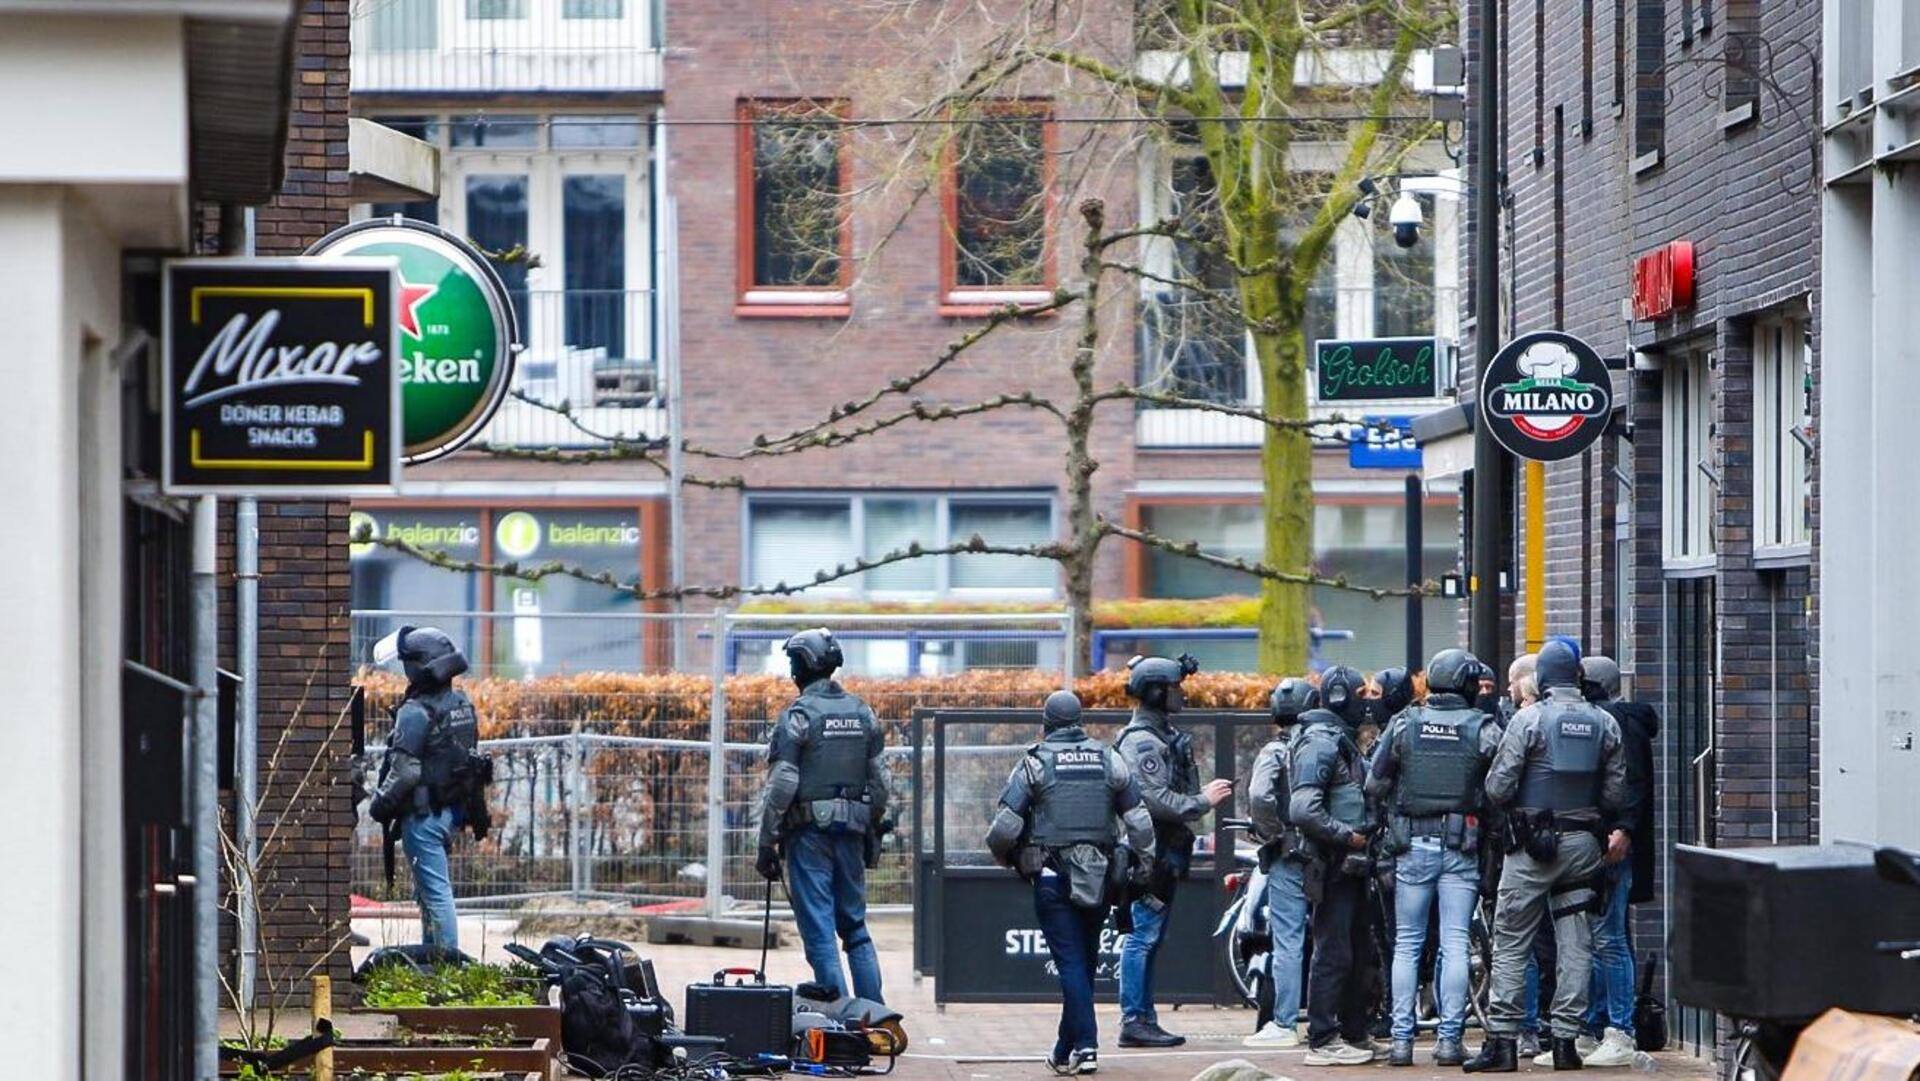 नीदरलैंड: एडे शहर के कैफे में बंधक बनाए गए कई लोग, घरों को कराया गया खाली